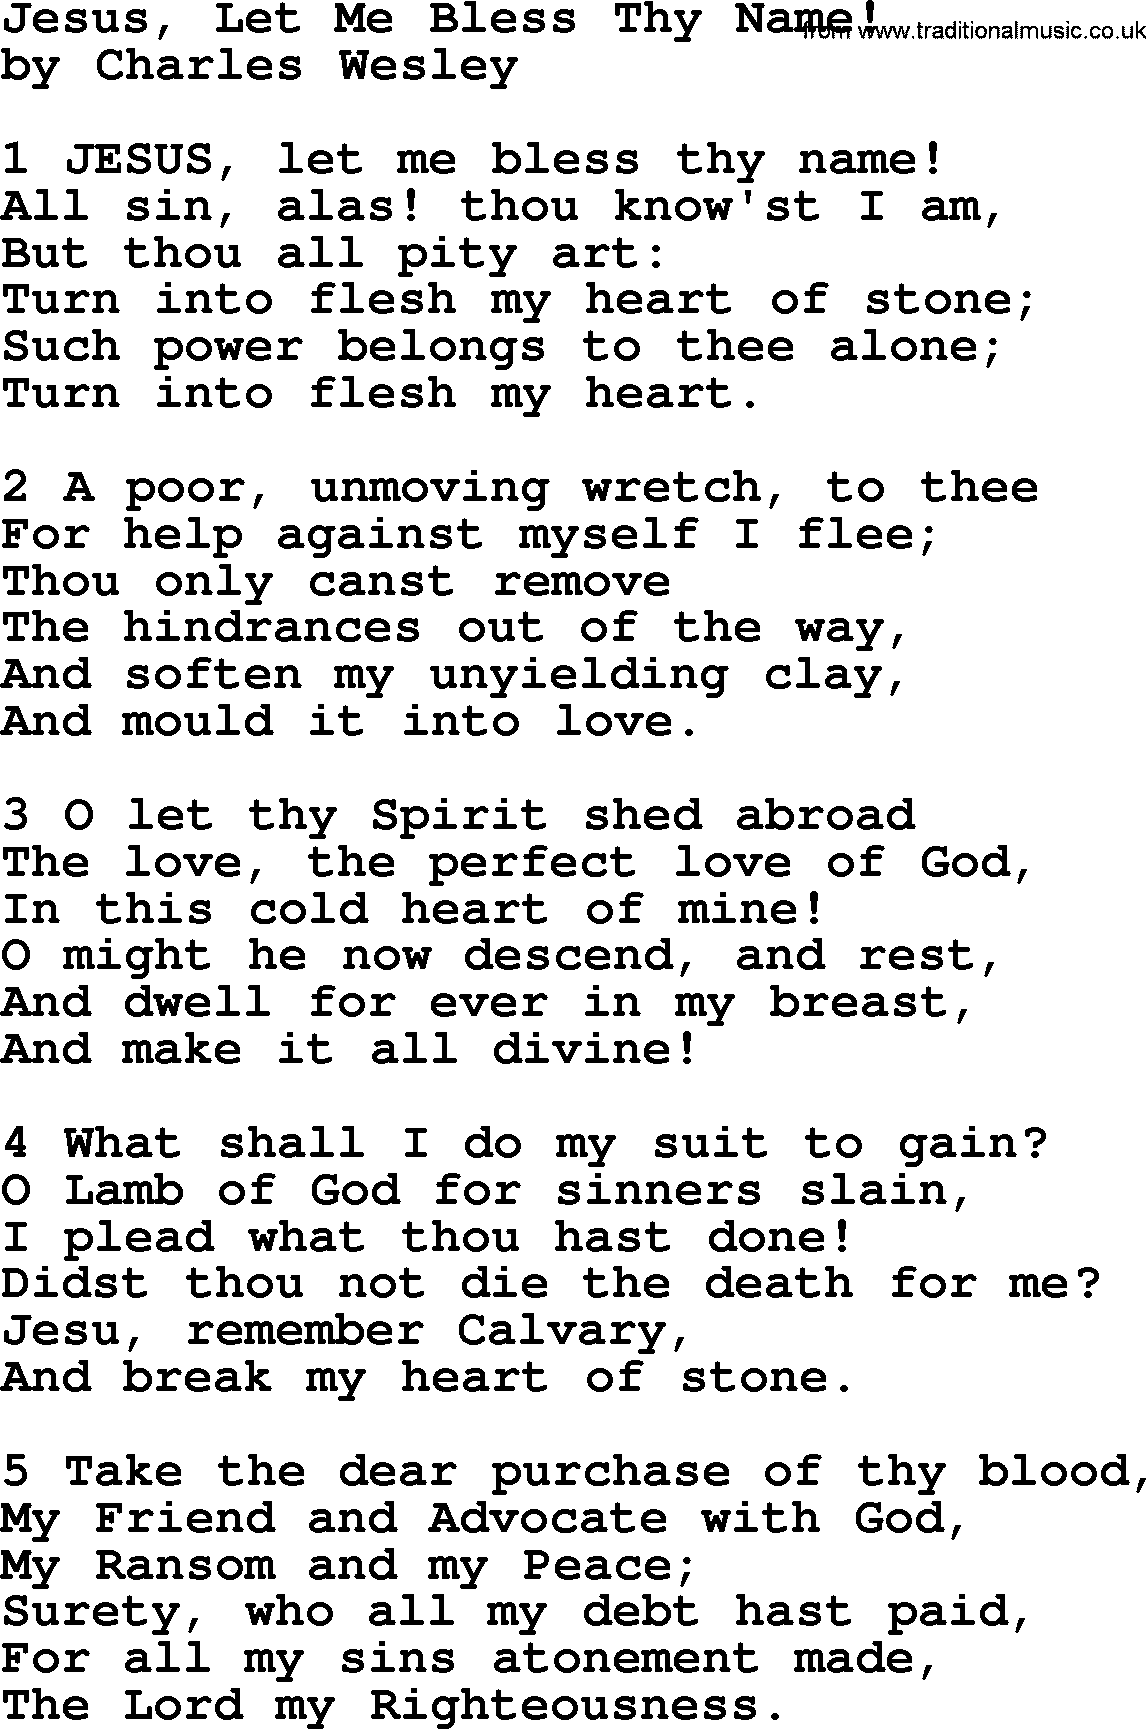 Charles Wesley hymn: Jesus, Let Me Bless Thy Name!, lyrics